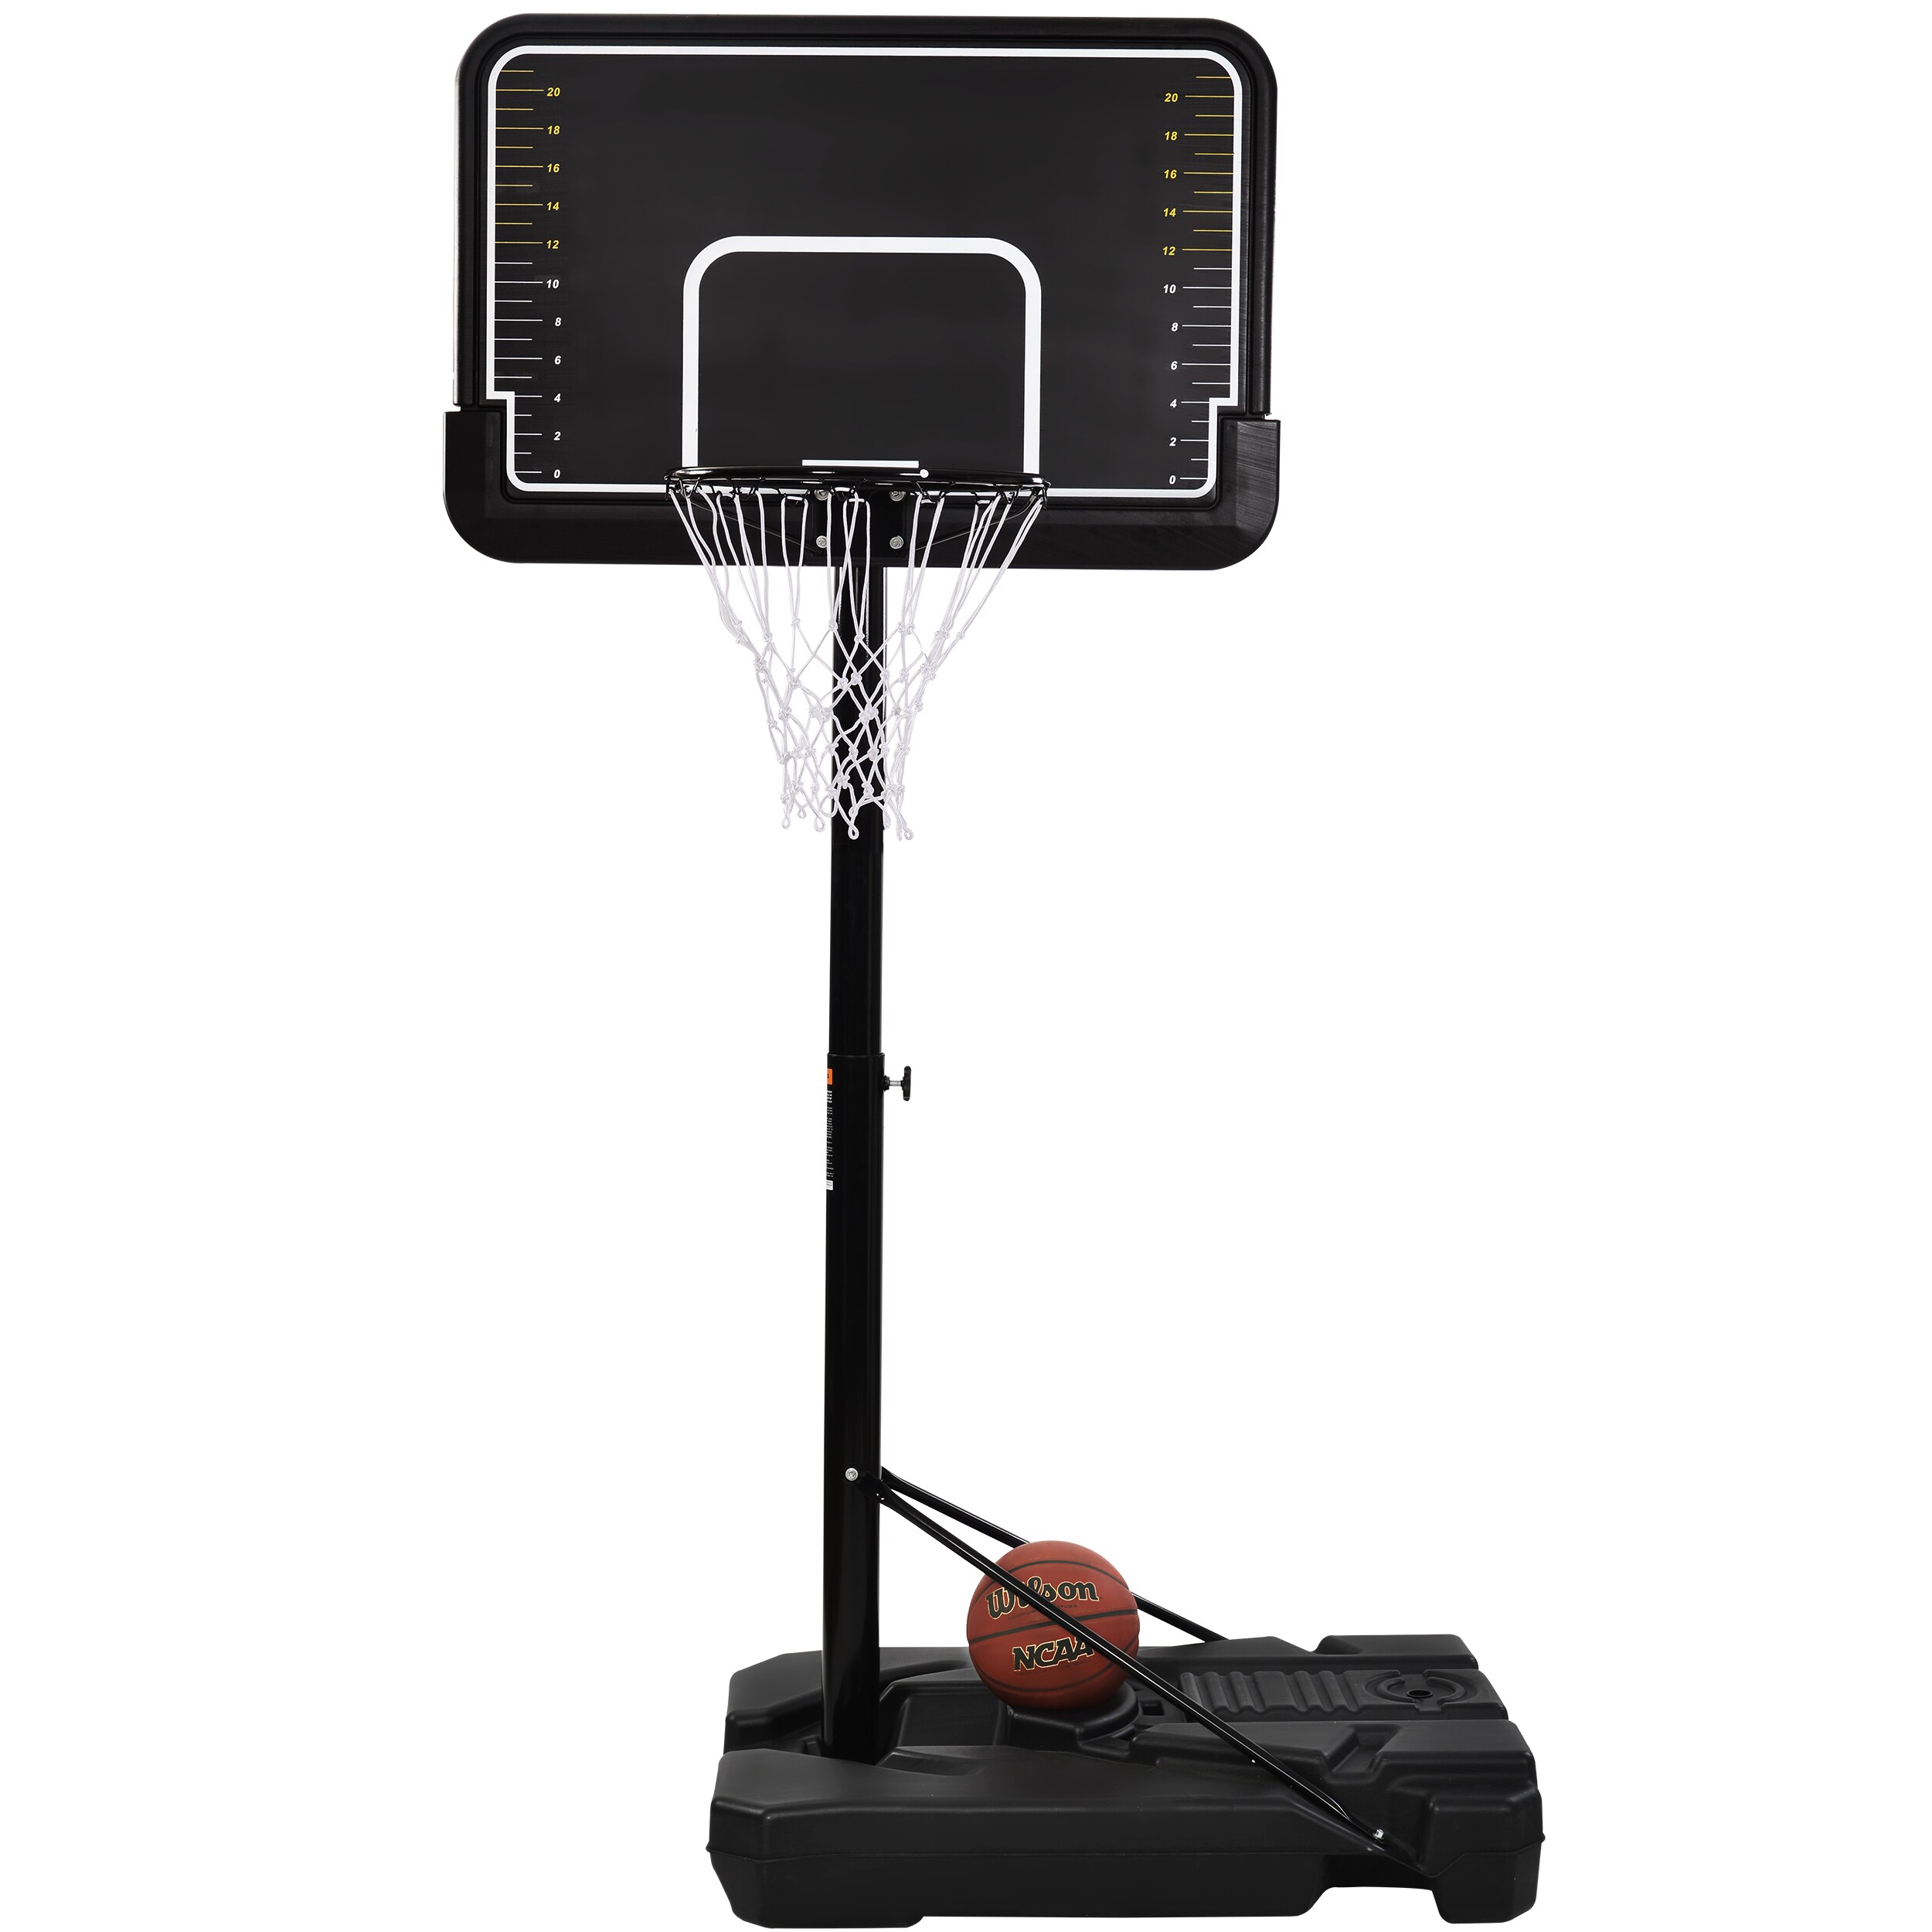 Indoor Outdoor Sport Universal Basketball Replacement Hoop Goal Rim Net LI 